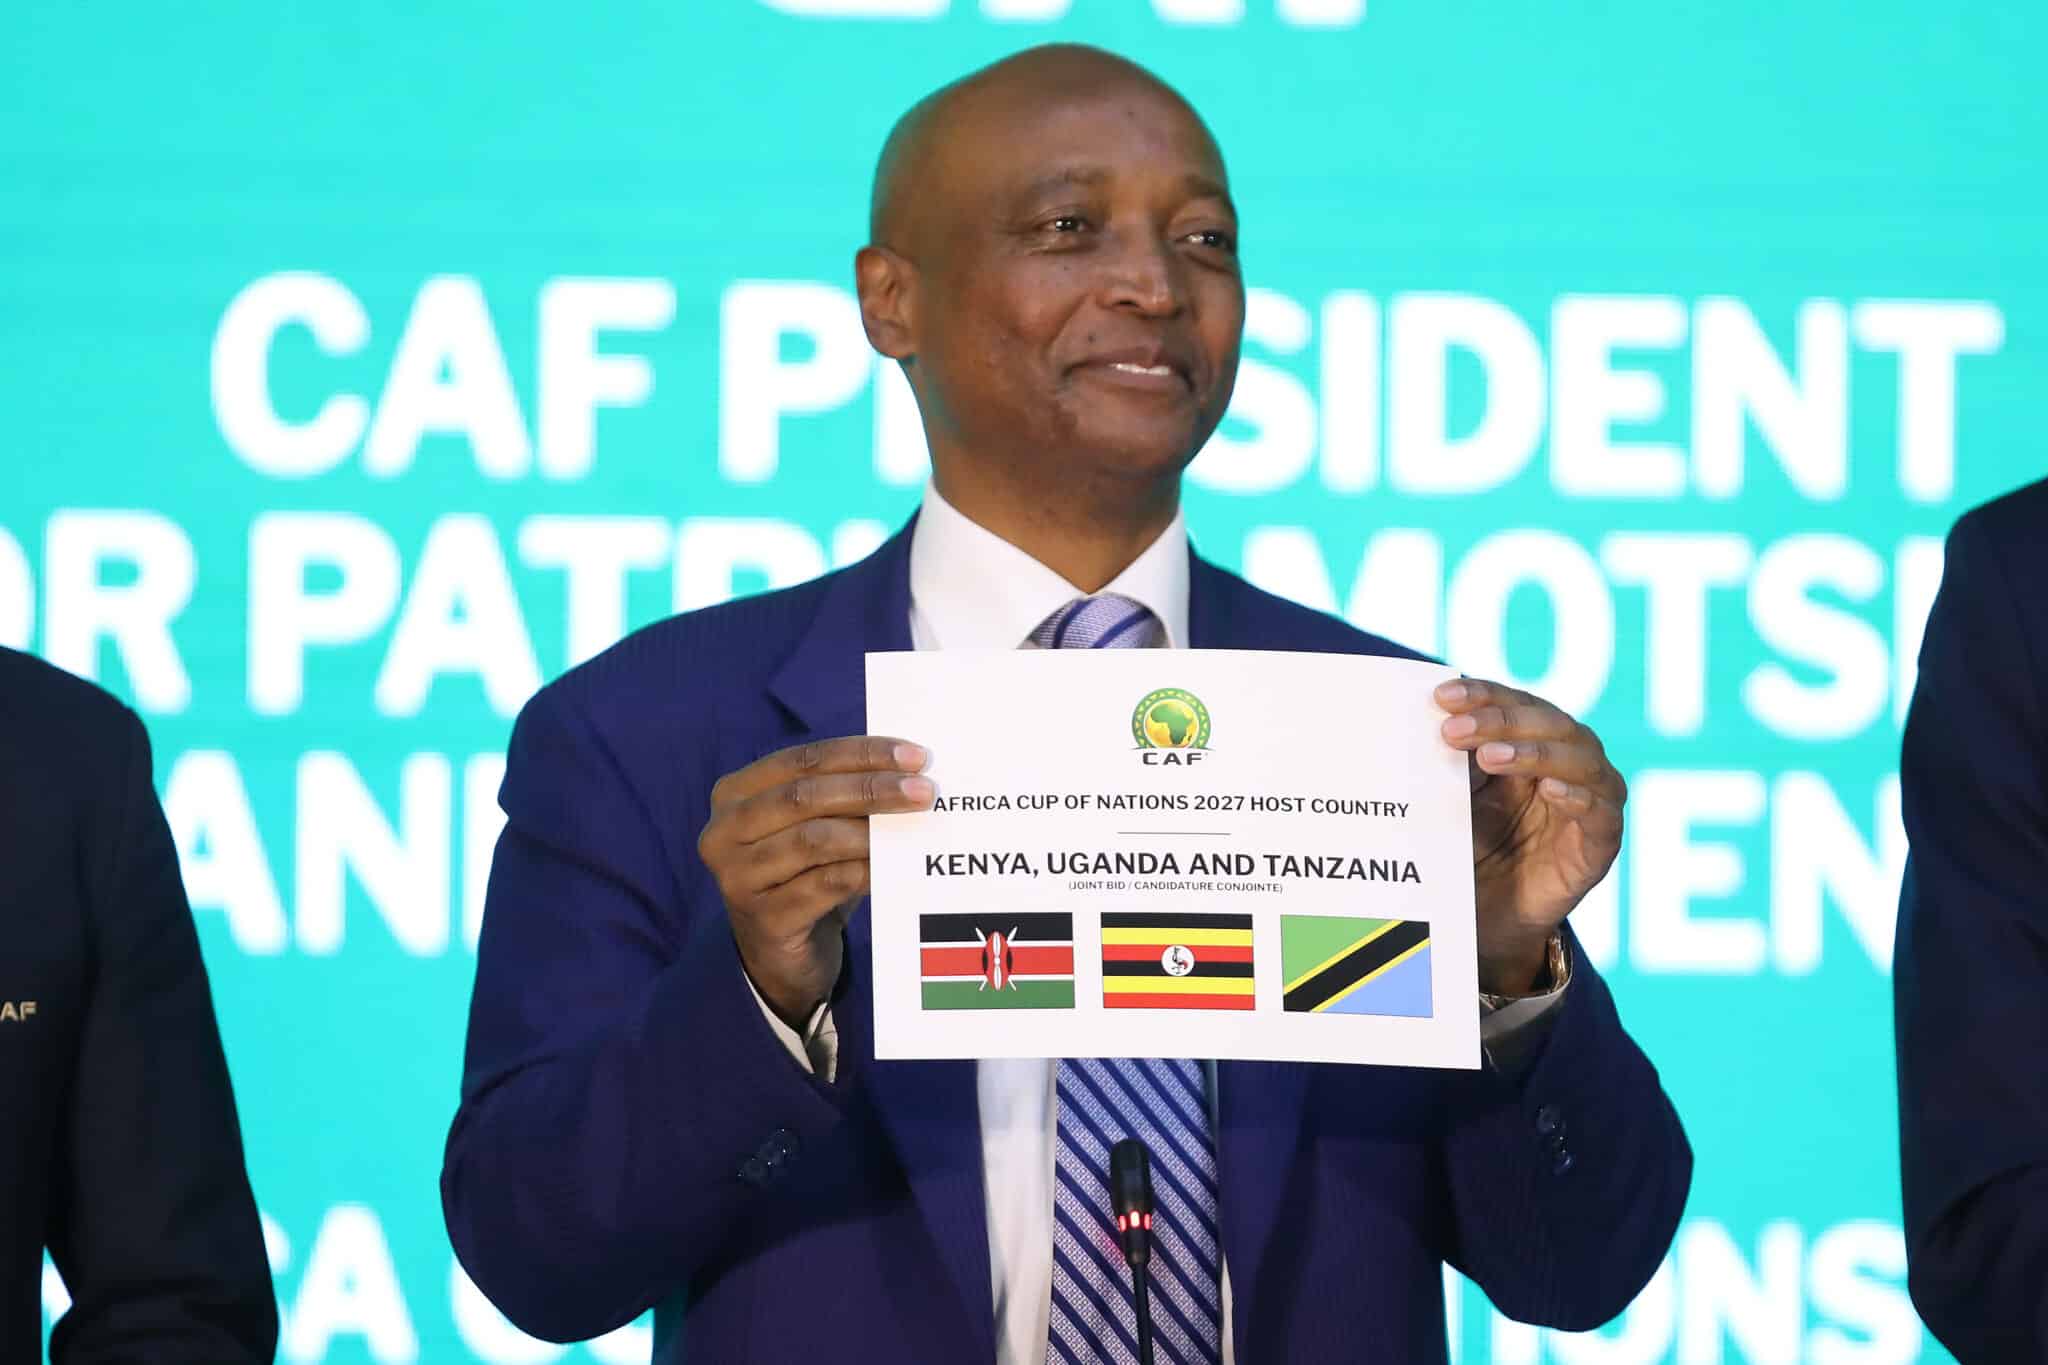 Le président de la CAF, Patrice Motsepé dévoilant les trois pays sélectionnés pour la CAN 2027